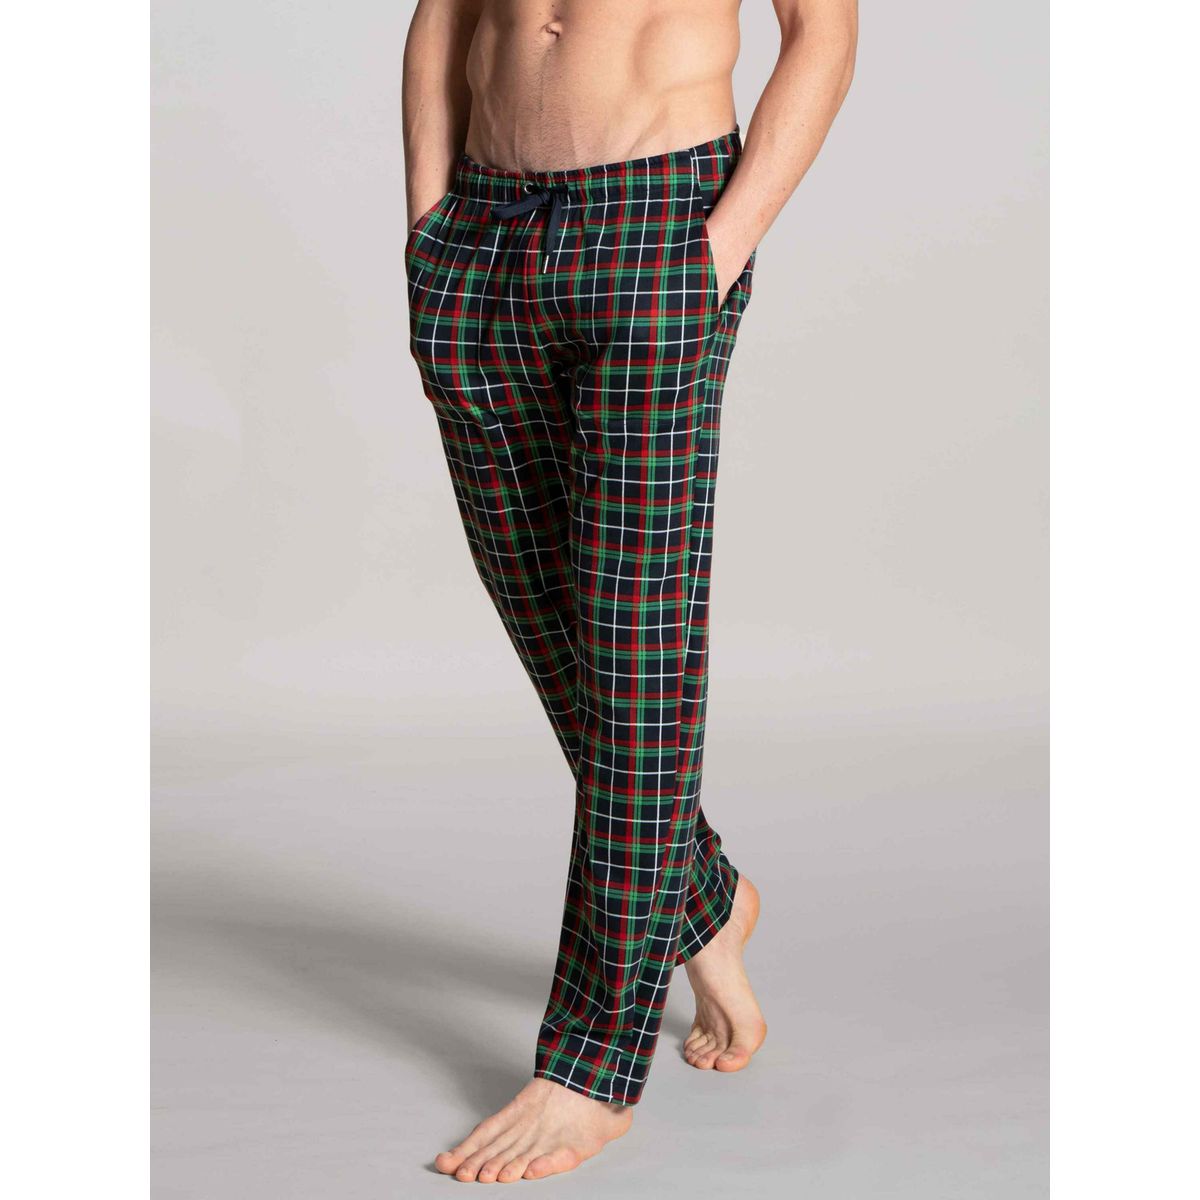 Aiboria Bas de Pyjama en Coton Homme Pantalon de Pyjama Vêtements de Nuit Homme